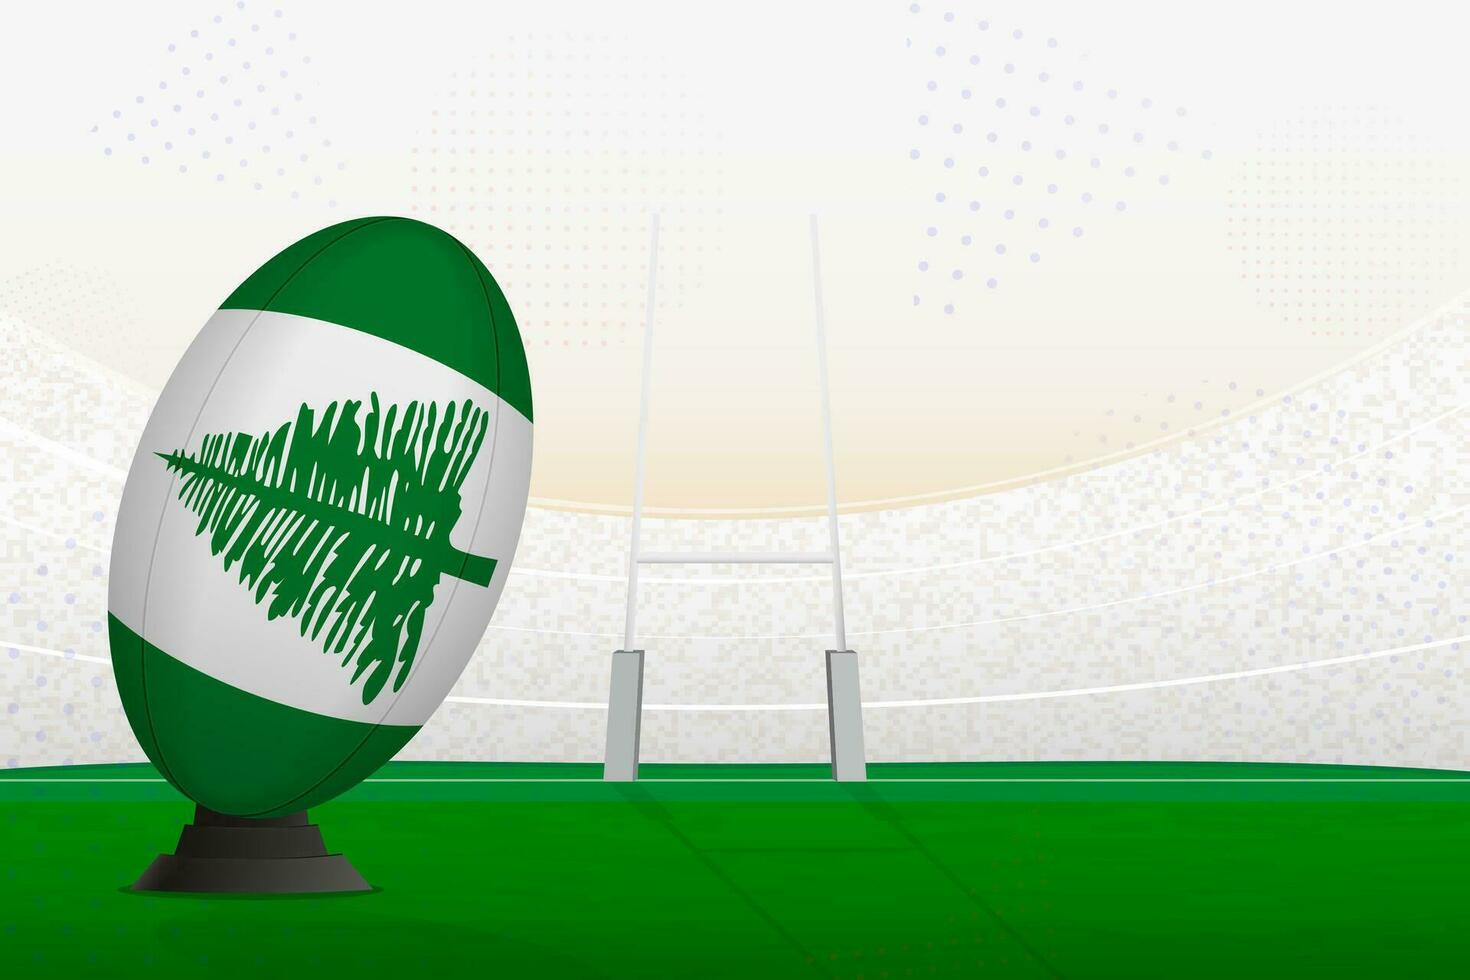 norfolk isla nacional equipo rugby pelota en rugby estadio y objetivo publicaciones, preparando para un multa o gratis patada. vector